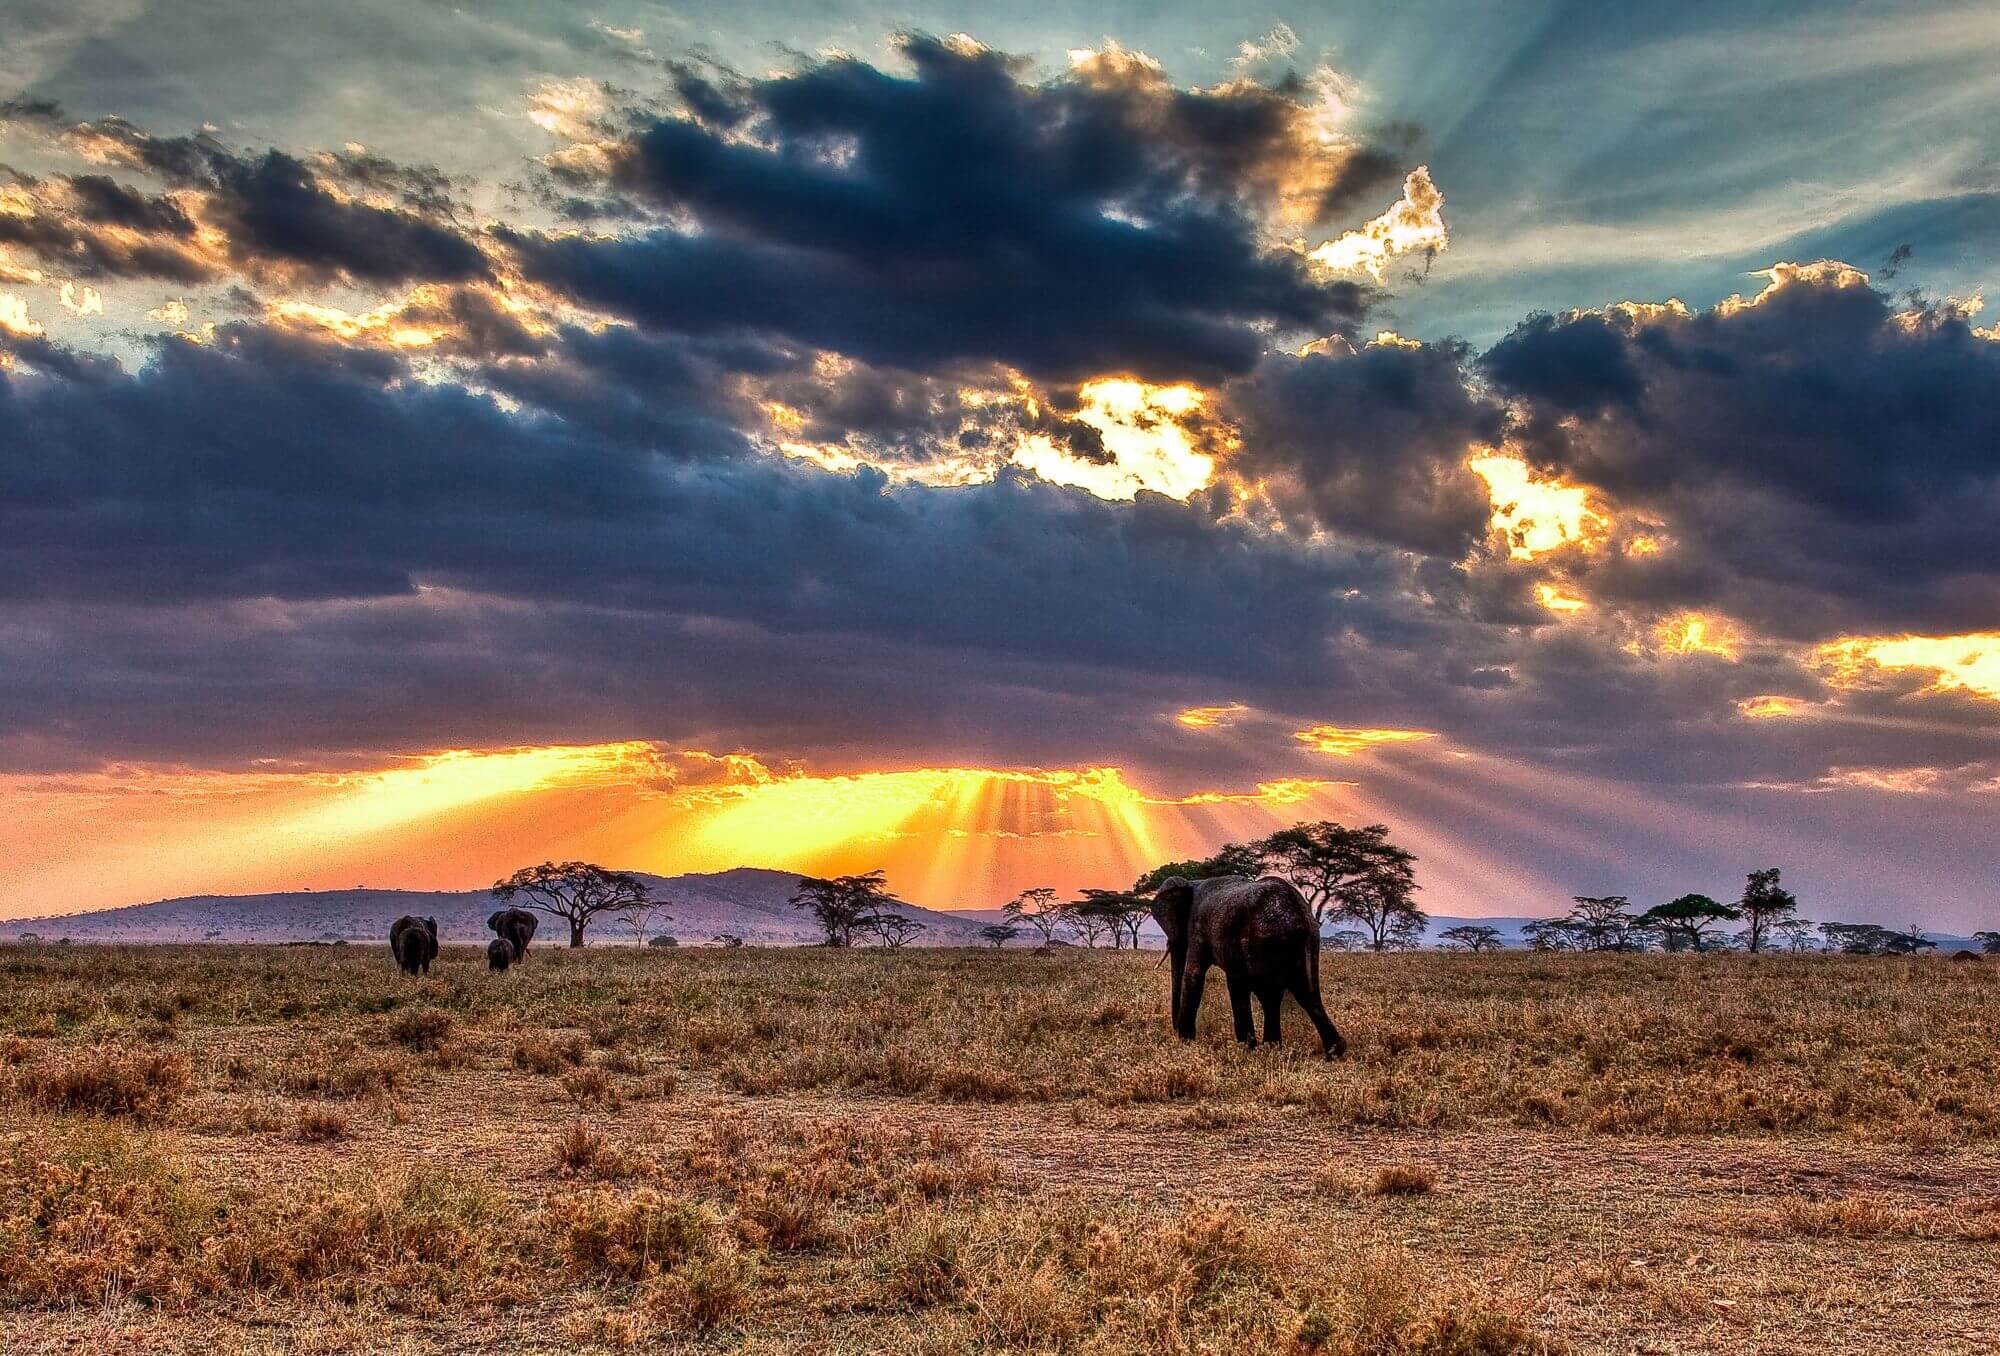 Feans-Serengeti-Mara-copy - 